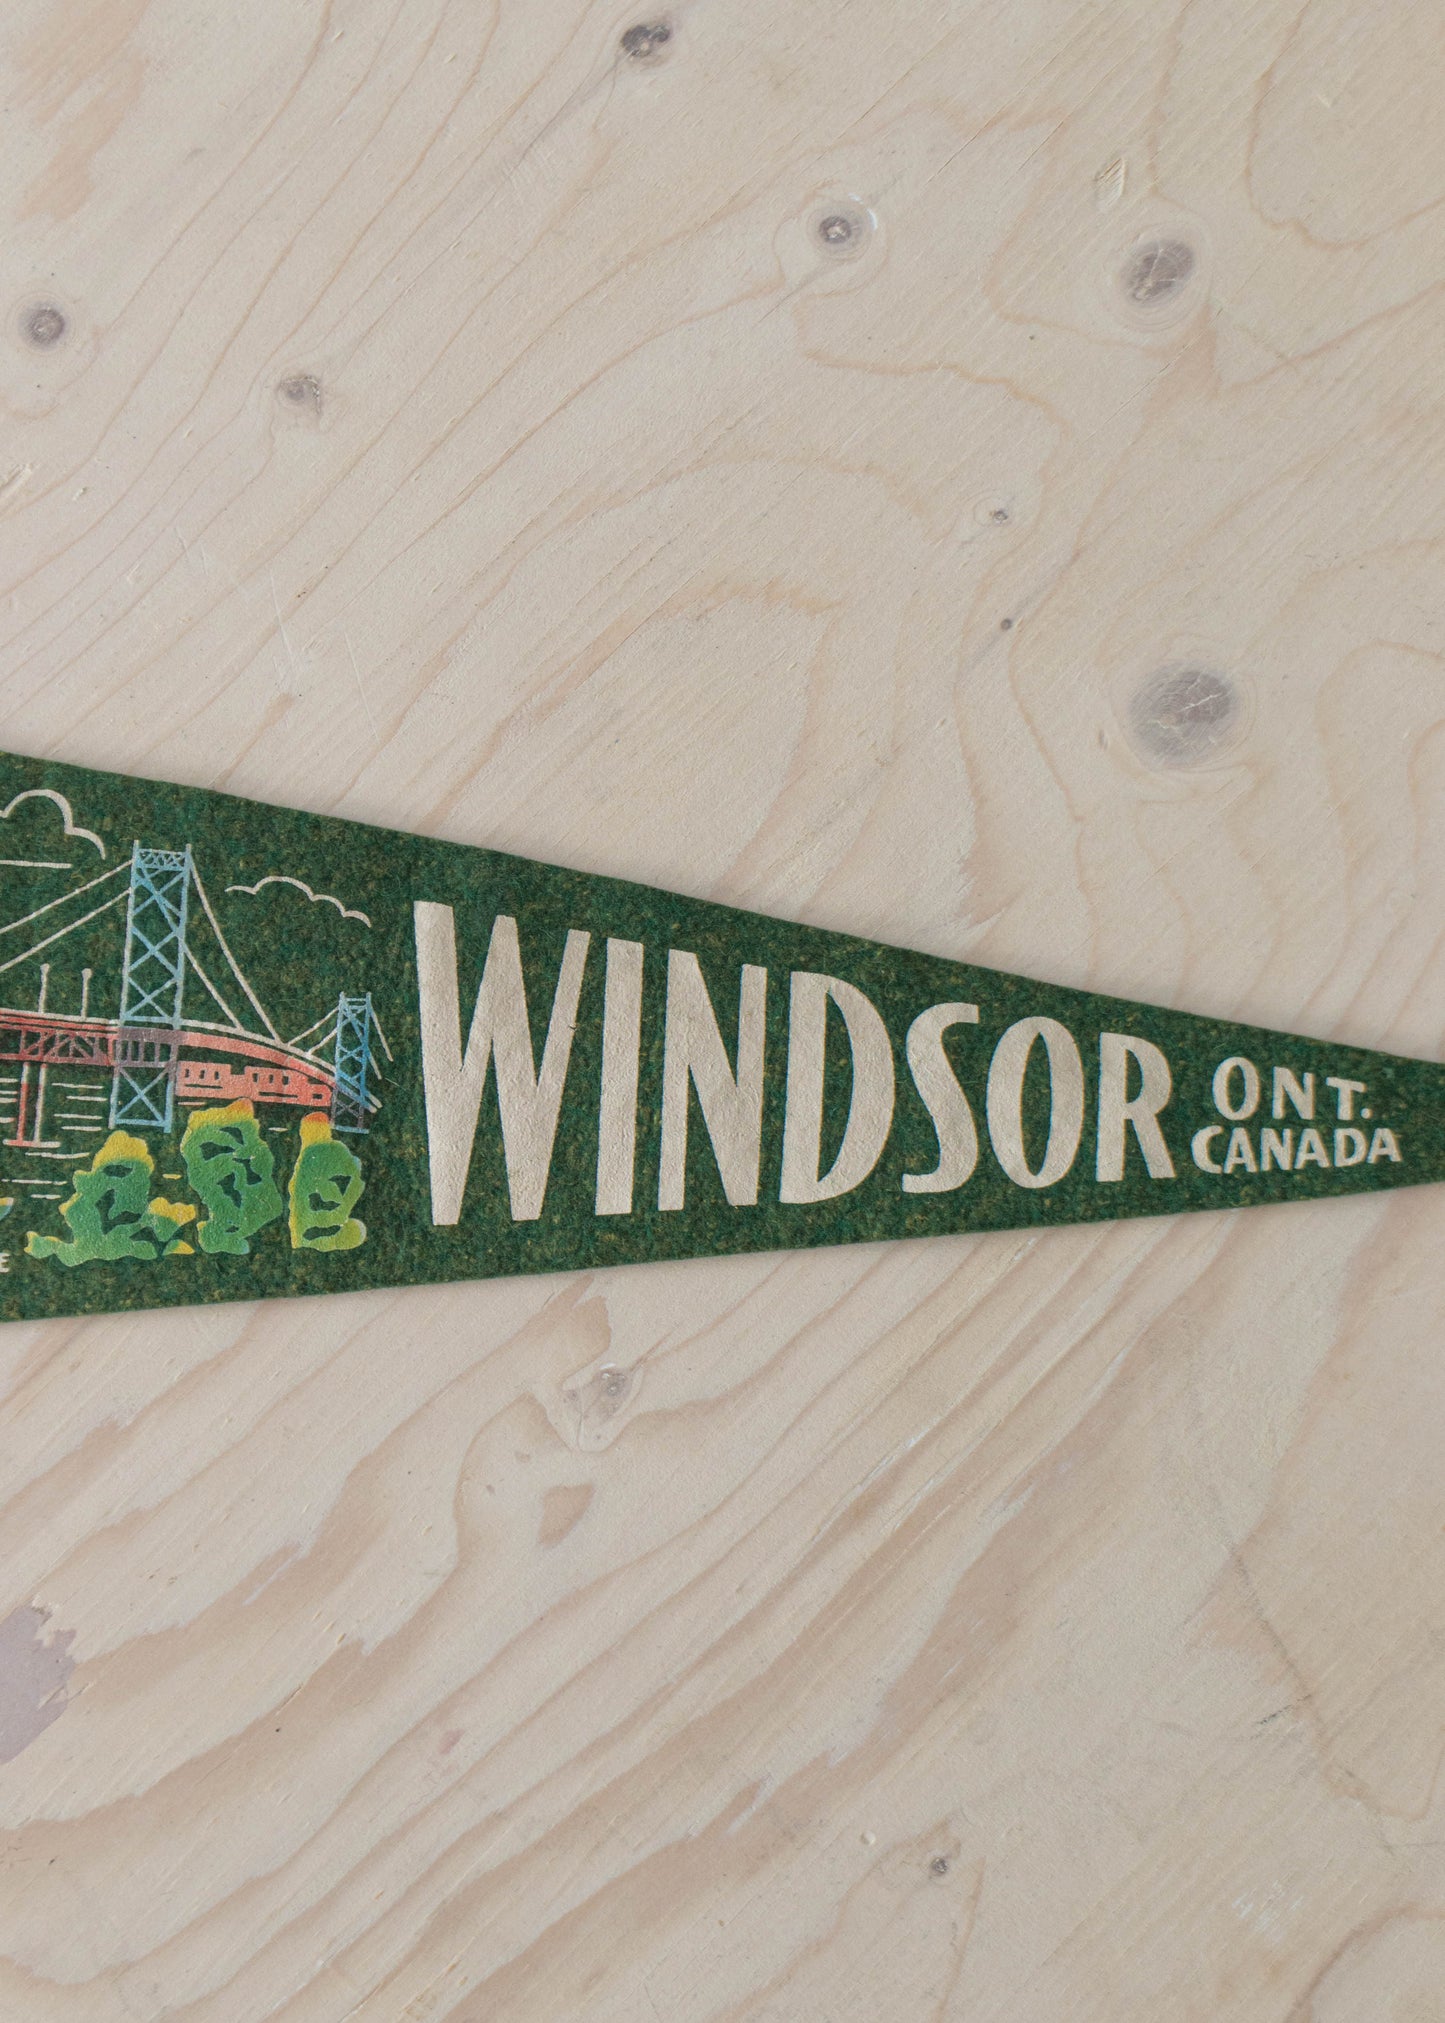 1970s Windsor Ontario Canada Pennant Flag